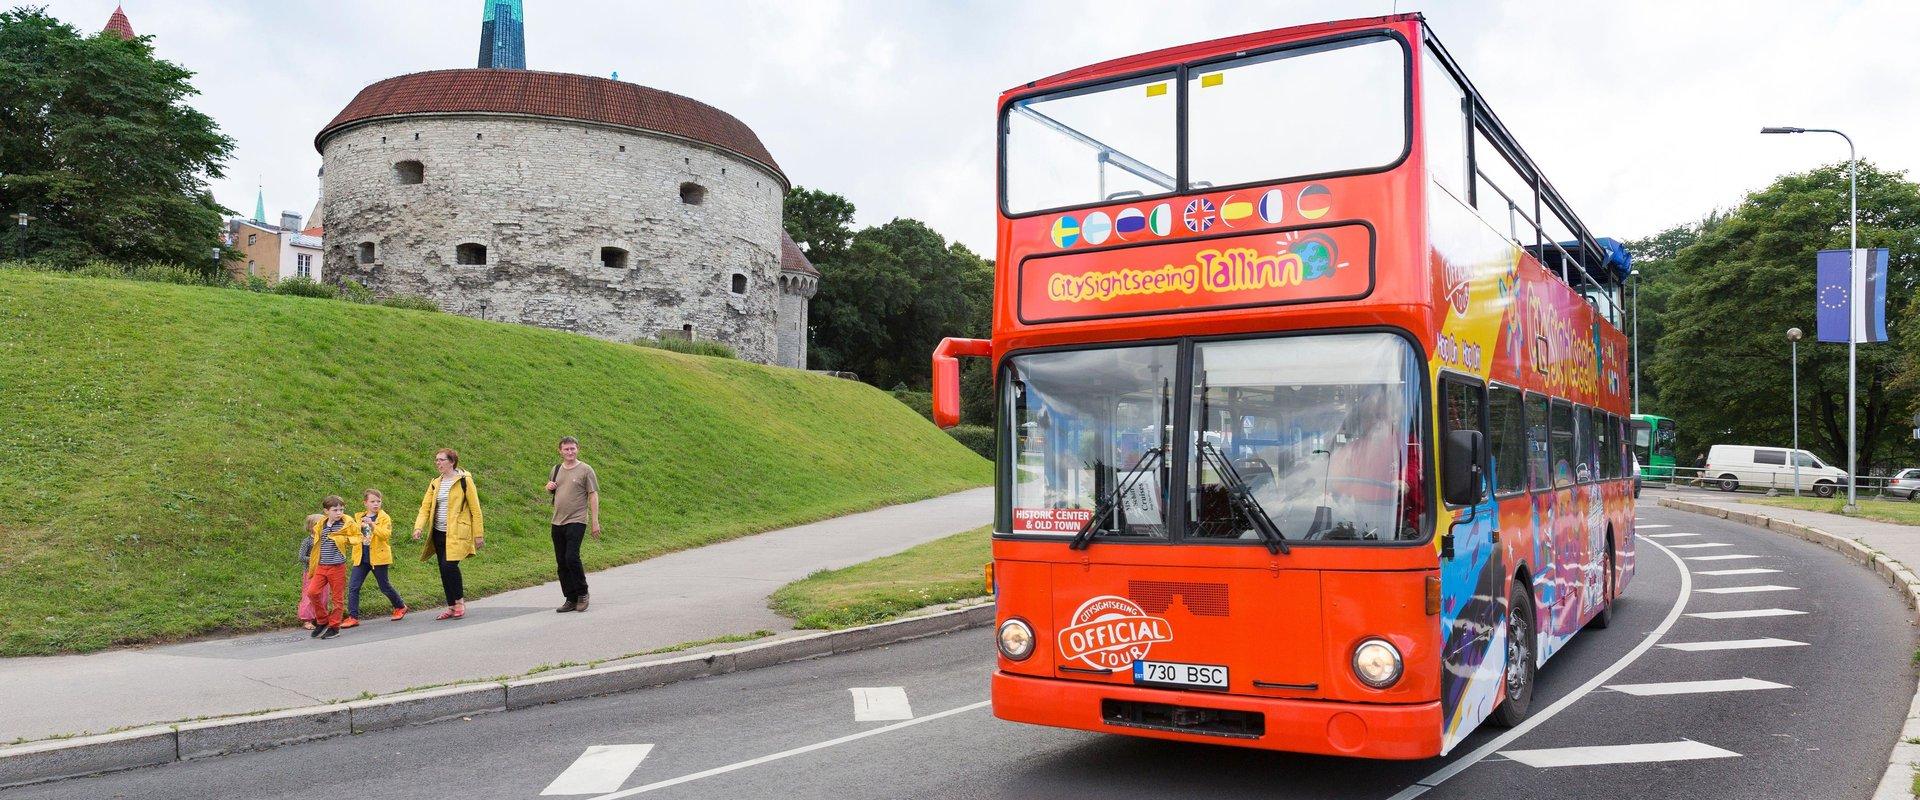 CitySightseeing Tallinn – Open Top Tour